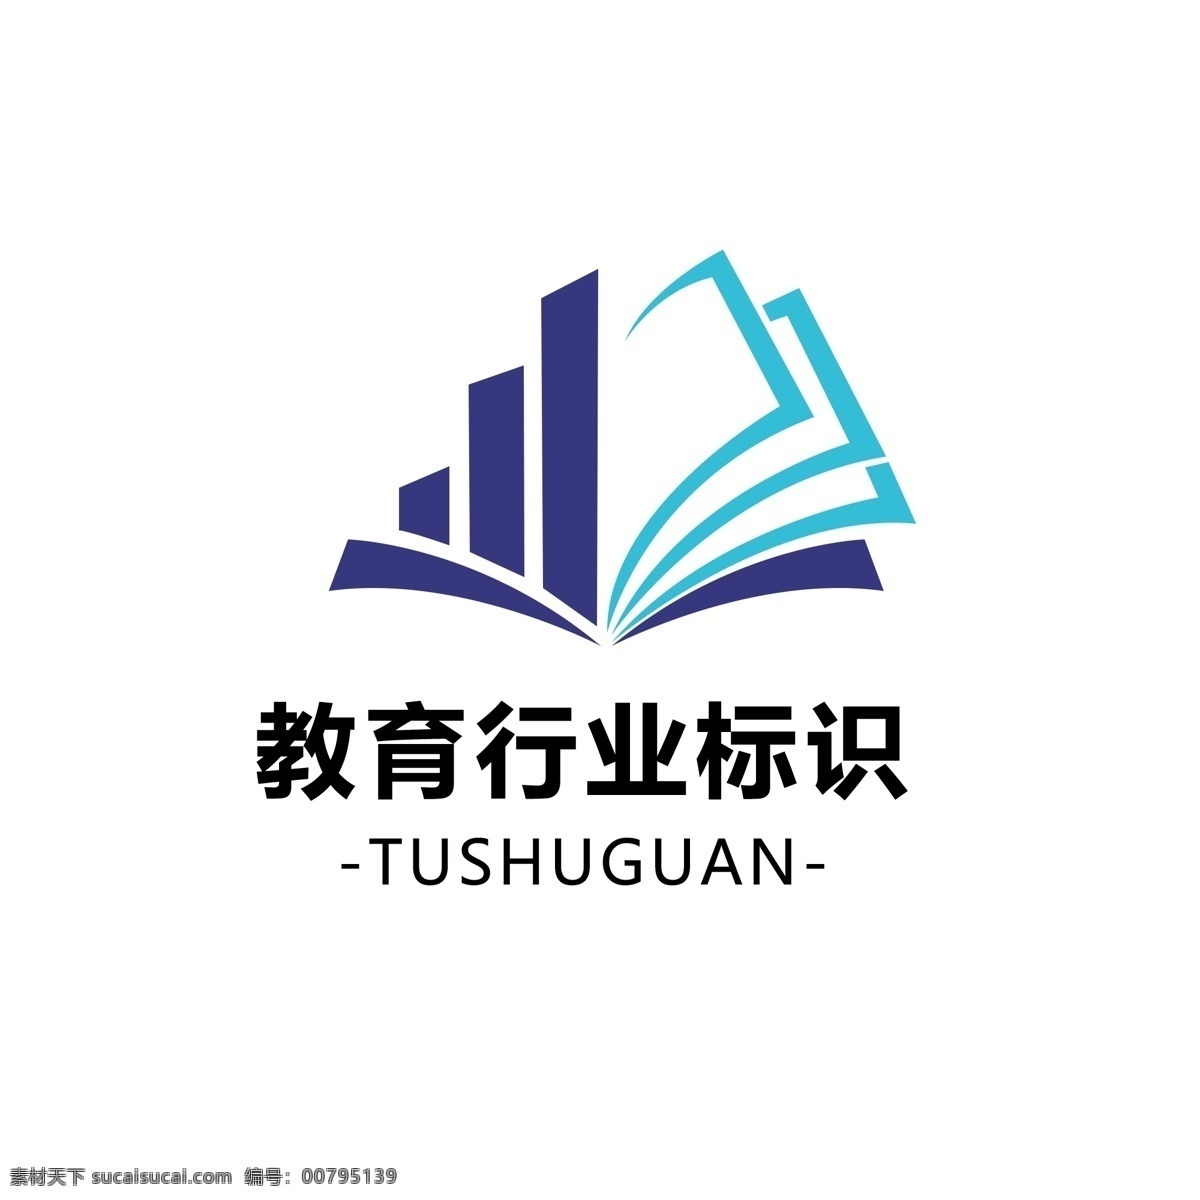 教育 行业 标识 logo 简约 图书 楼 标志